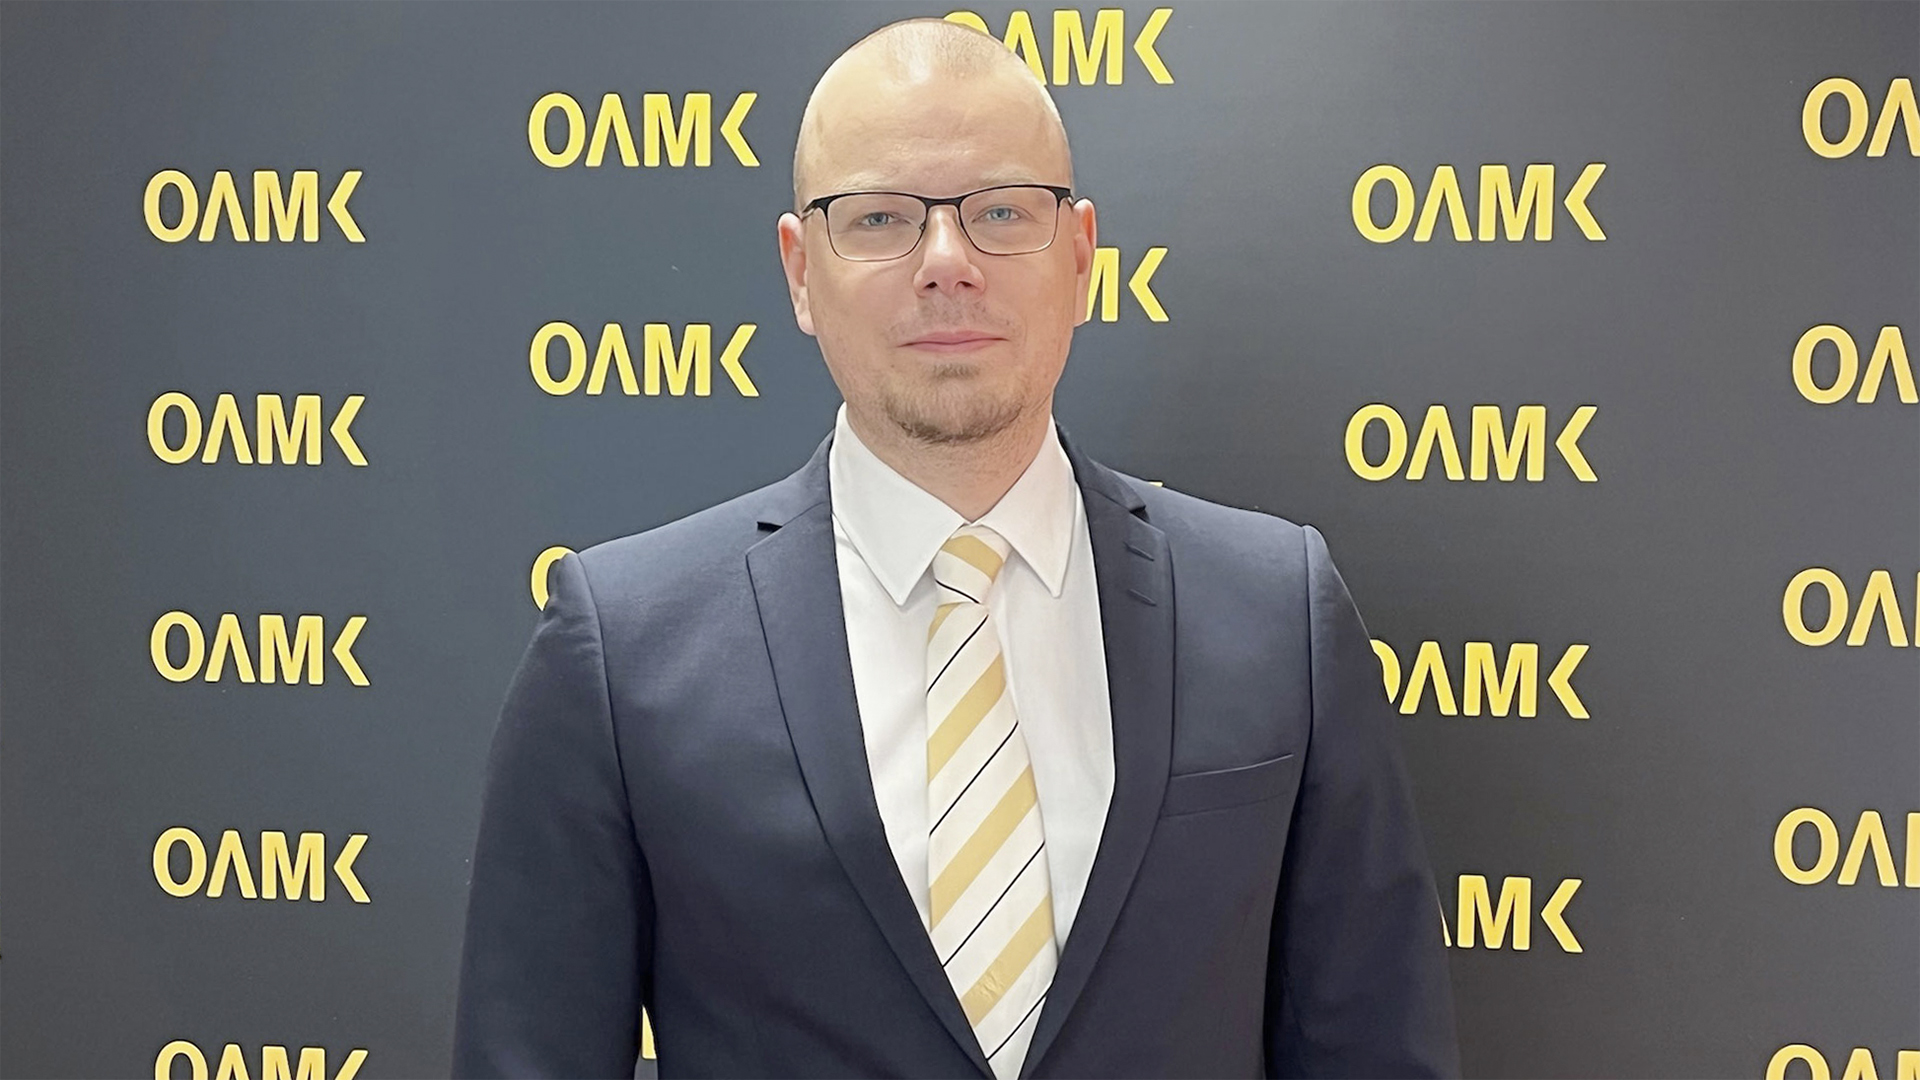 Pukuun pukeutunut mies seisoo Oamk-logolla varustetun kuvausseinän edessä.